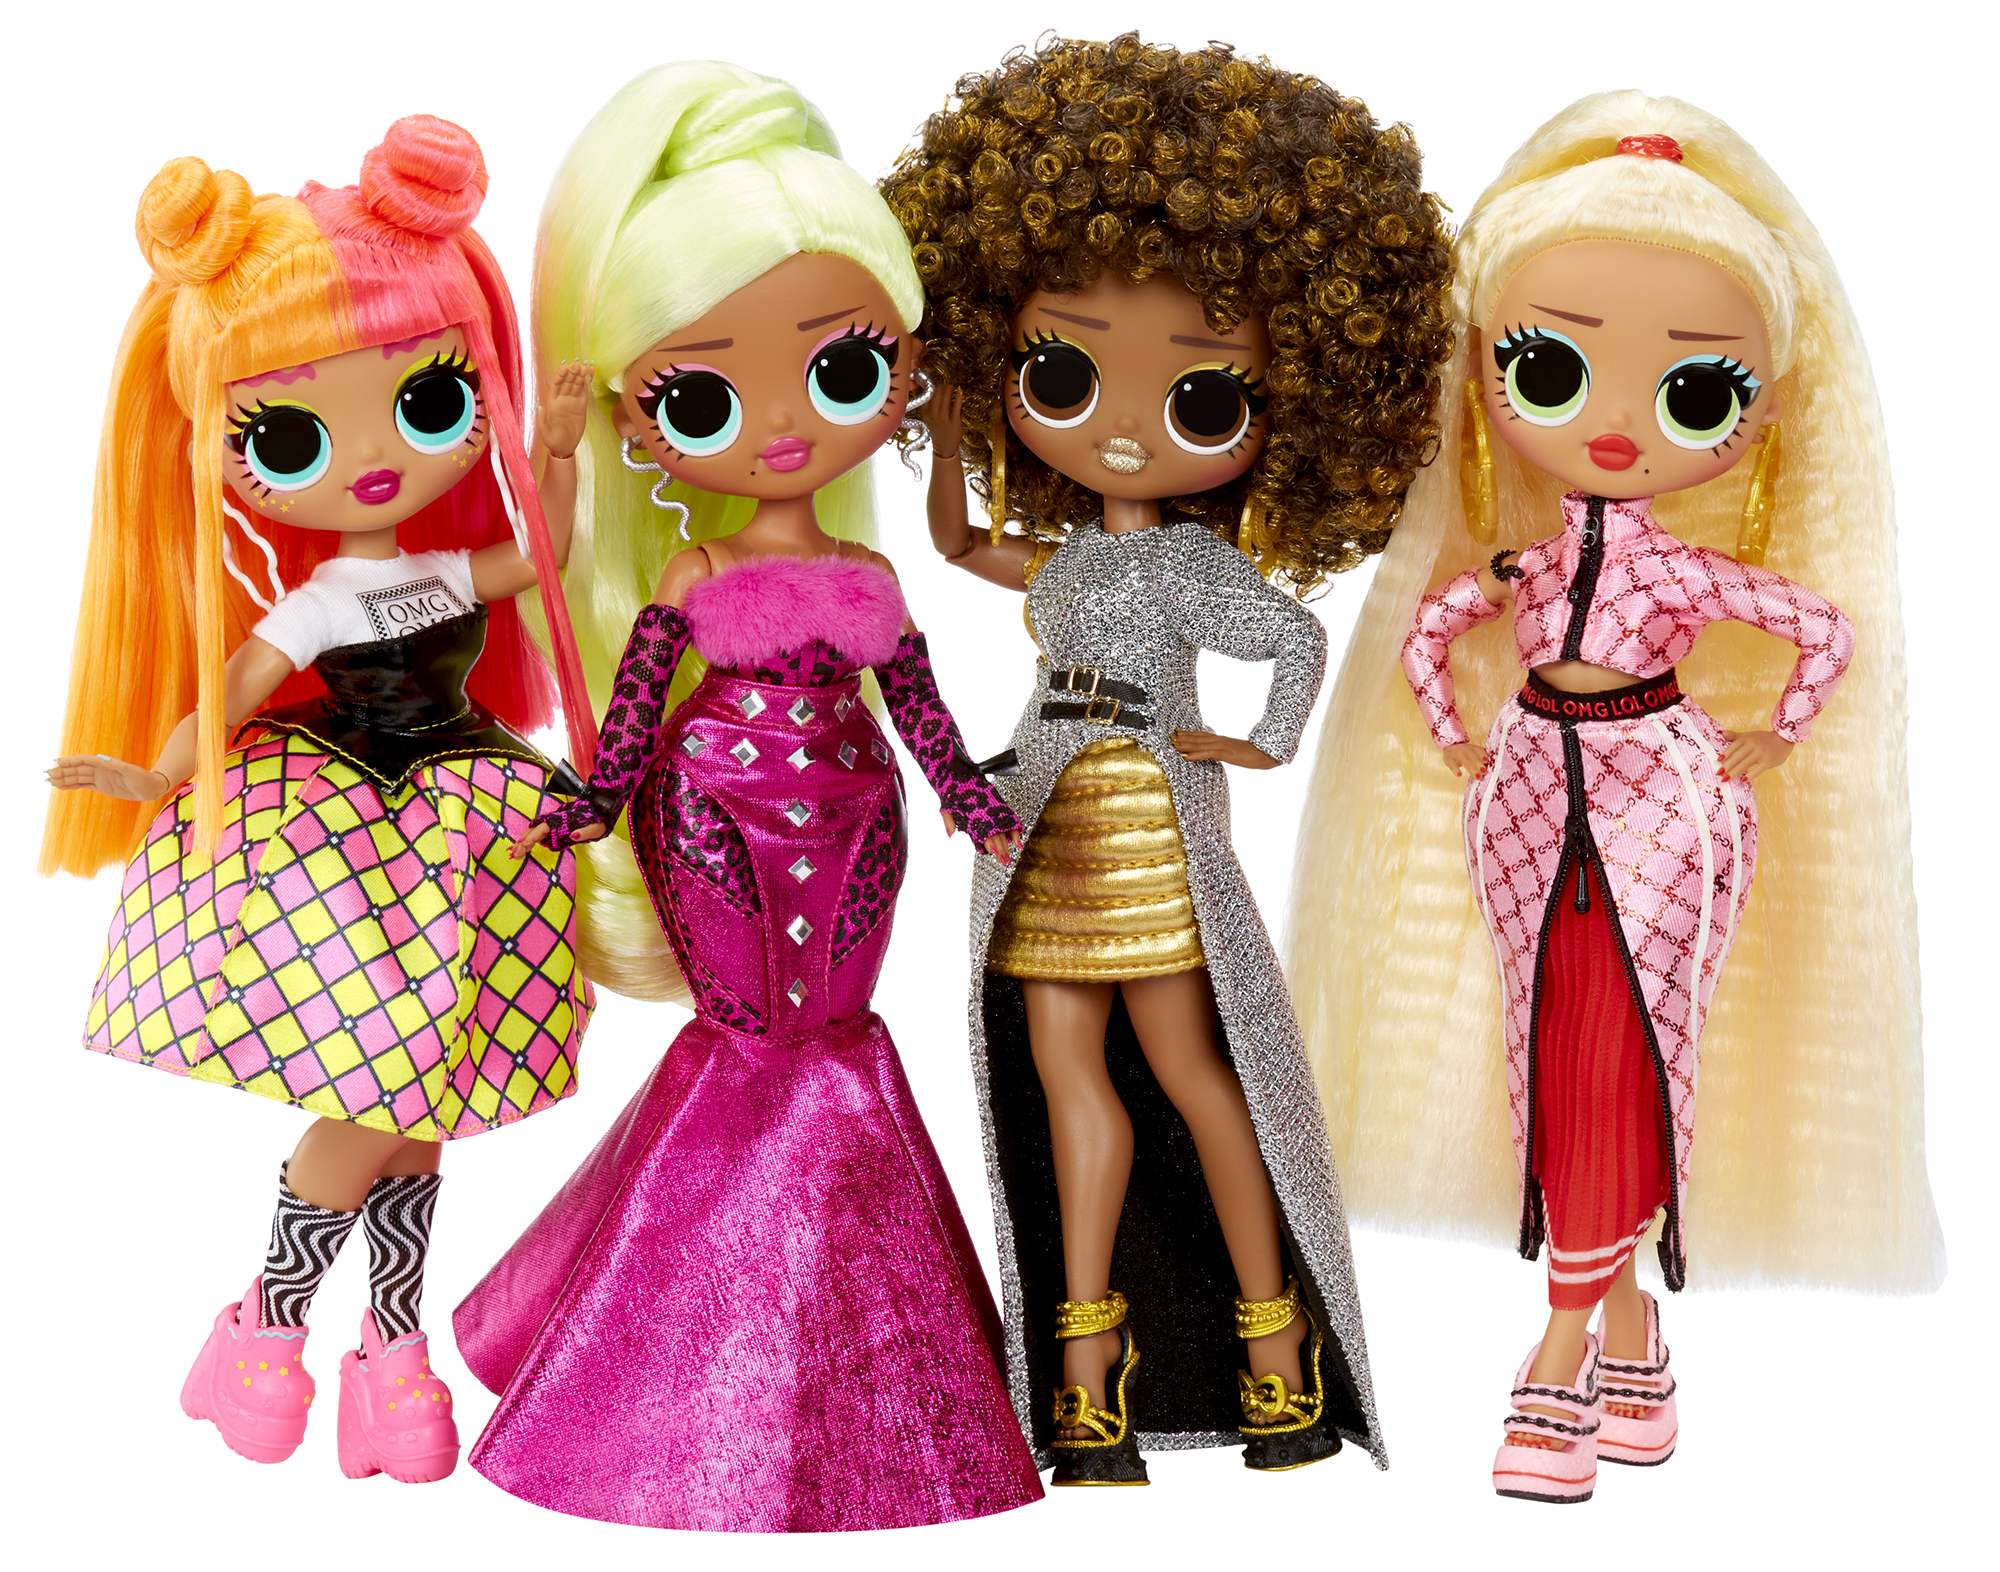 Lol surprise bambola alla moda omg - swag - con molteplici sorprese, tra cui abiti trasformabili e favolosi accessori - LOL